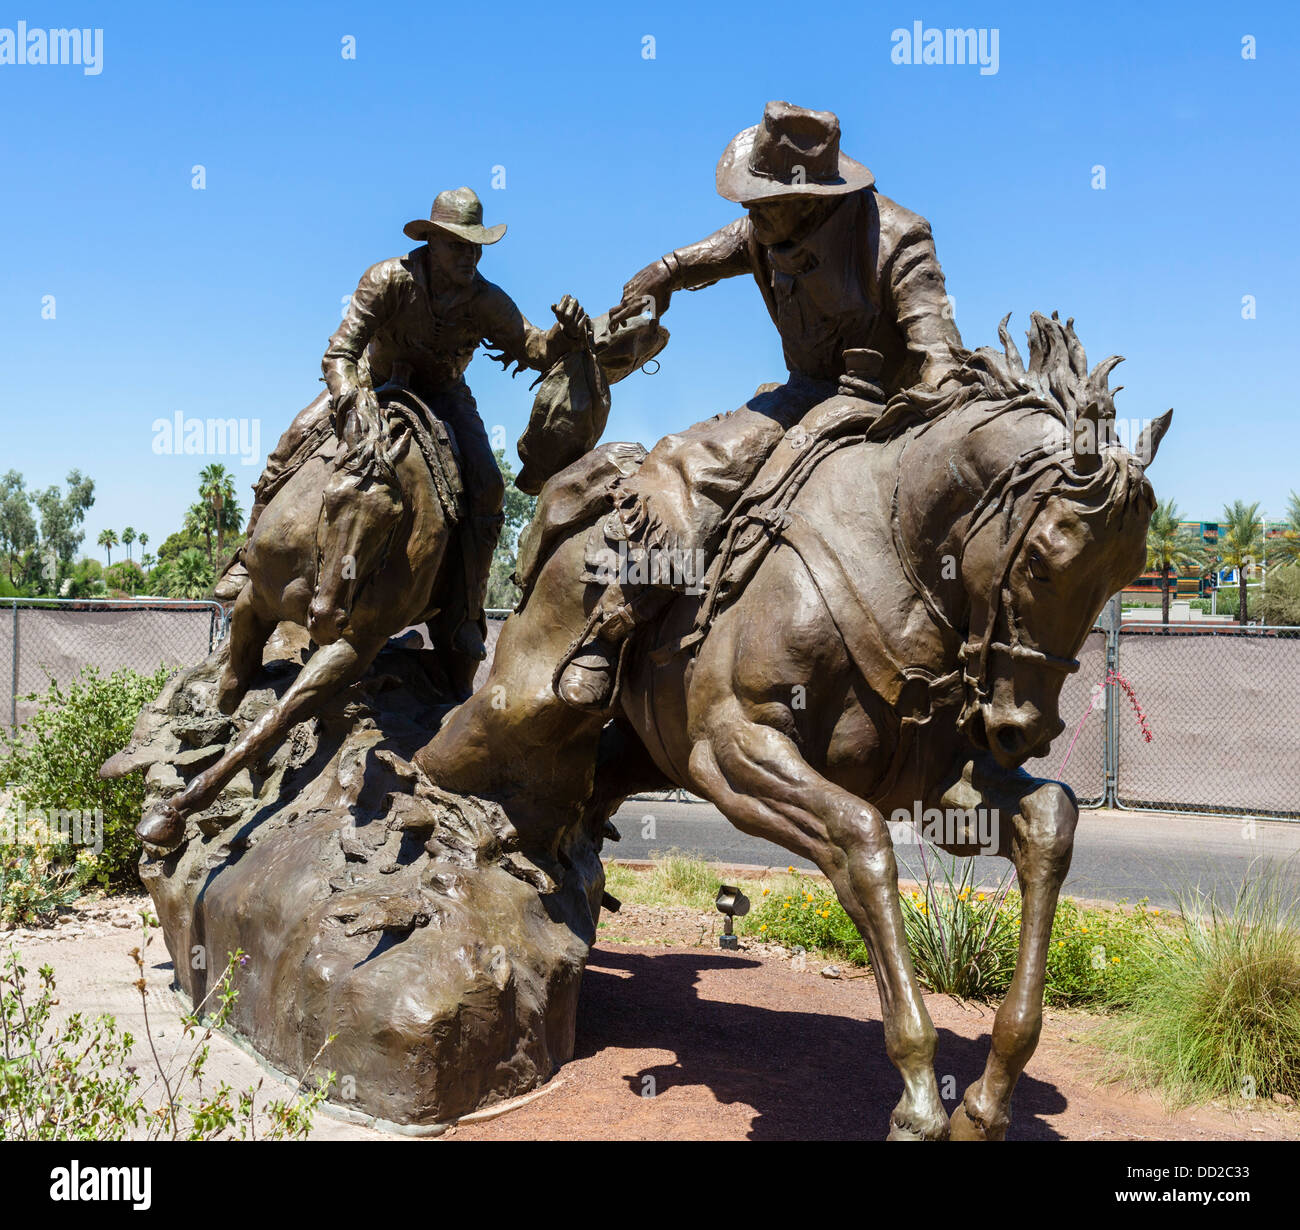 Statua per commemorare la storica Hashknife Pony Express post percorso, il Waterfront District, Scottsdale, Arizona, Stati Uniti d'America Foto Stock